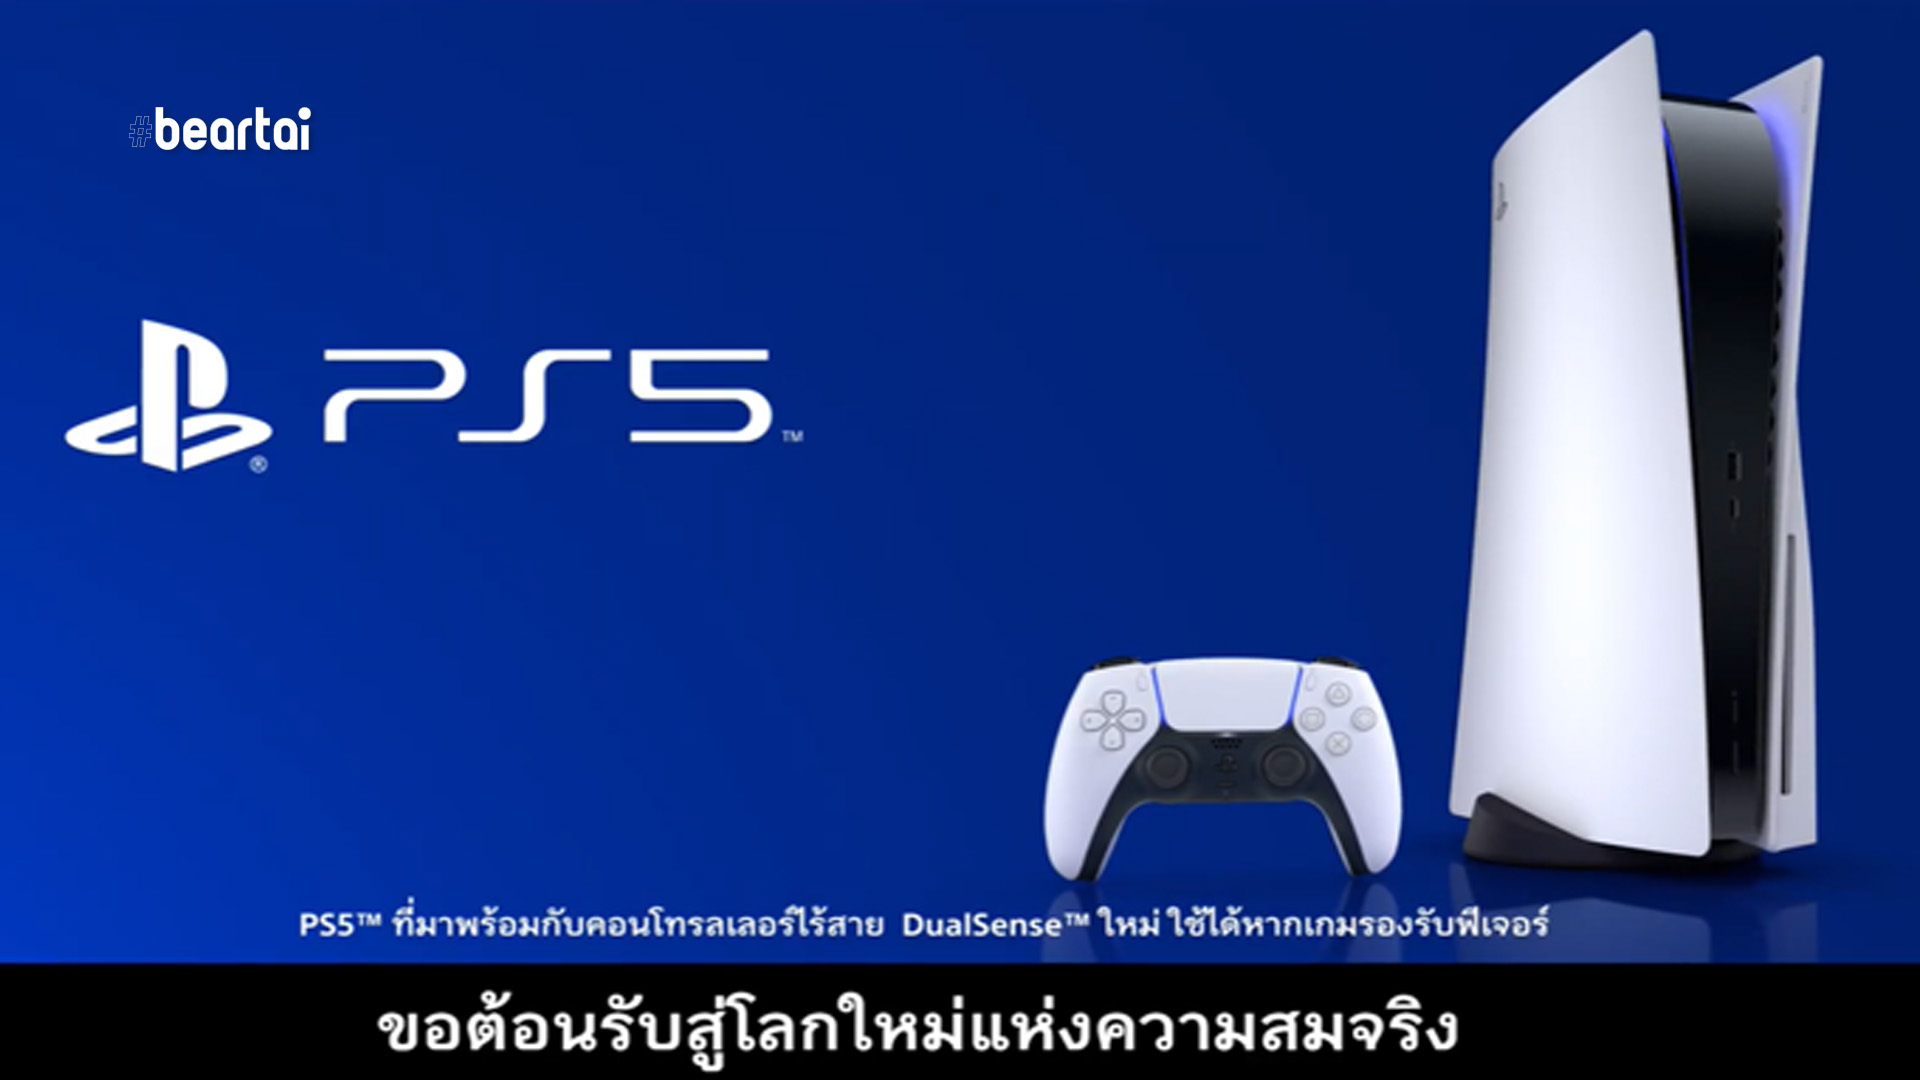 PlayStation ปล่อยวิดีโอโฆษณา PS5 ครั้งแรกของโลก! พร้อมคำบรรยายภาษาไทย